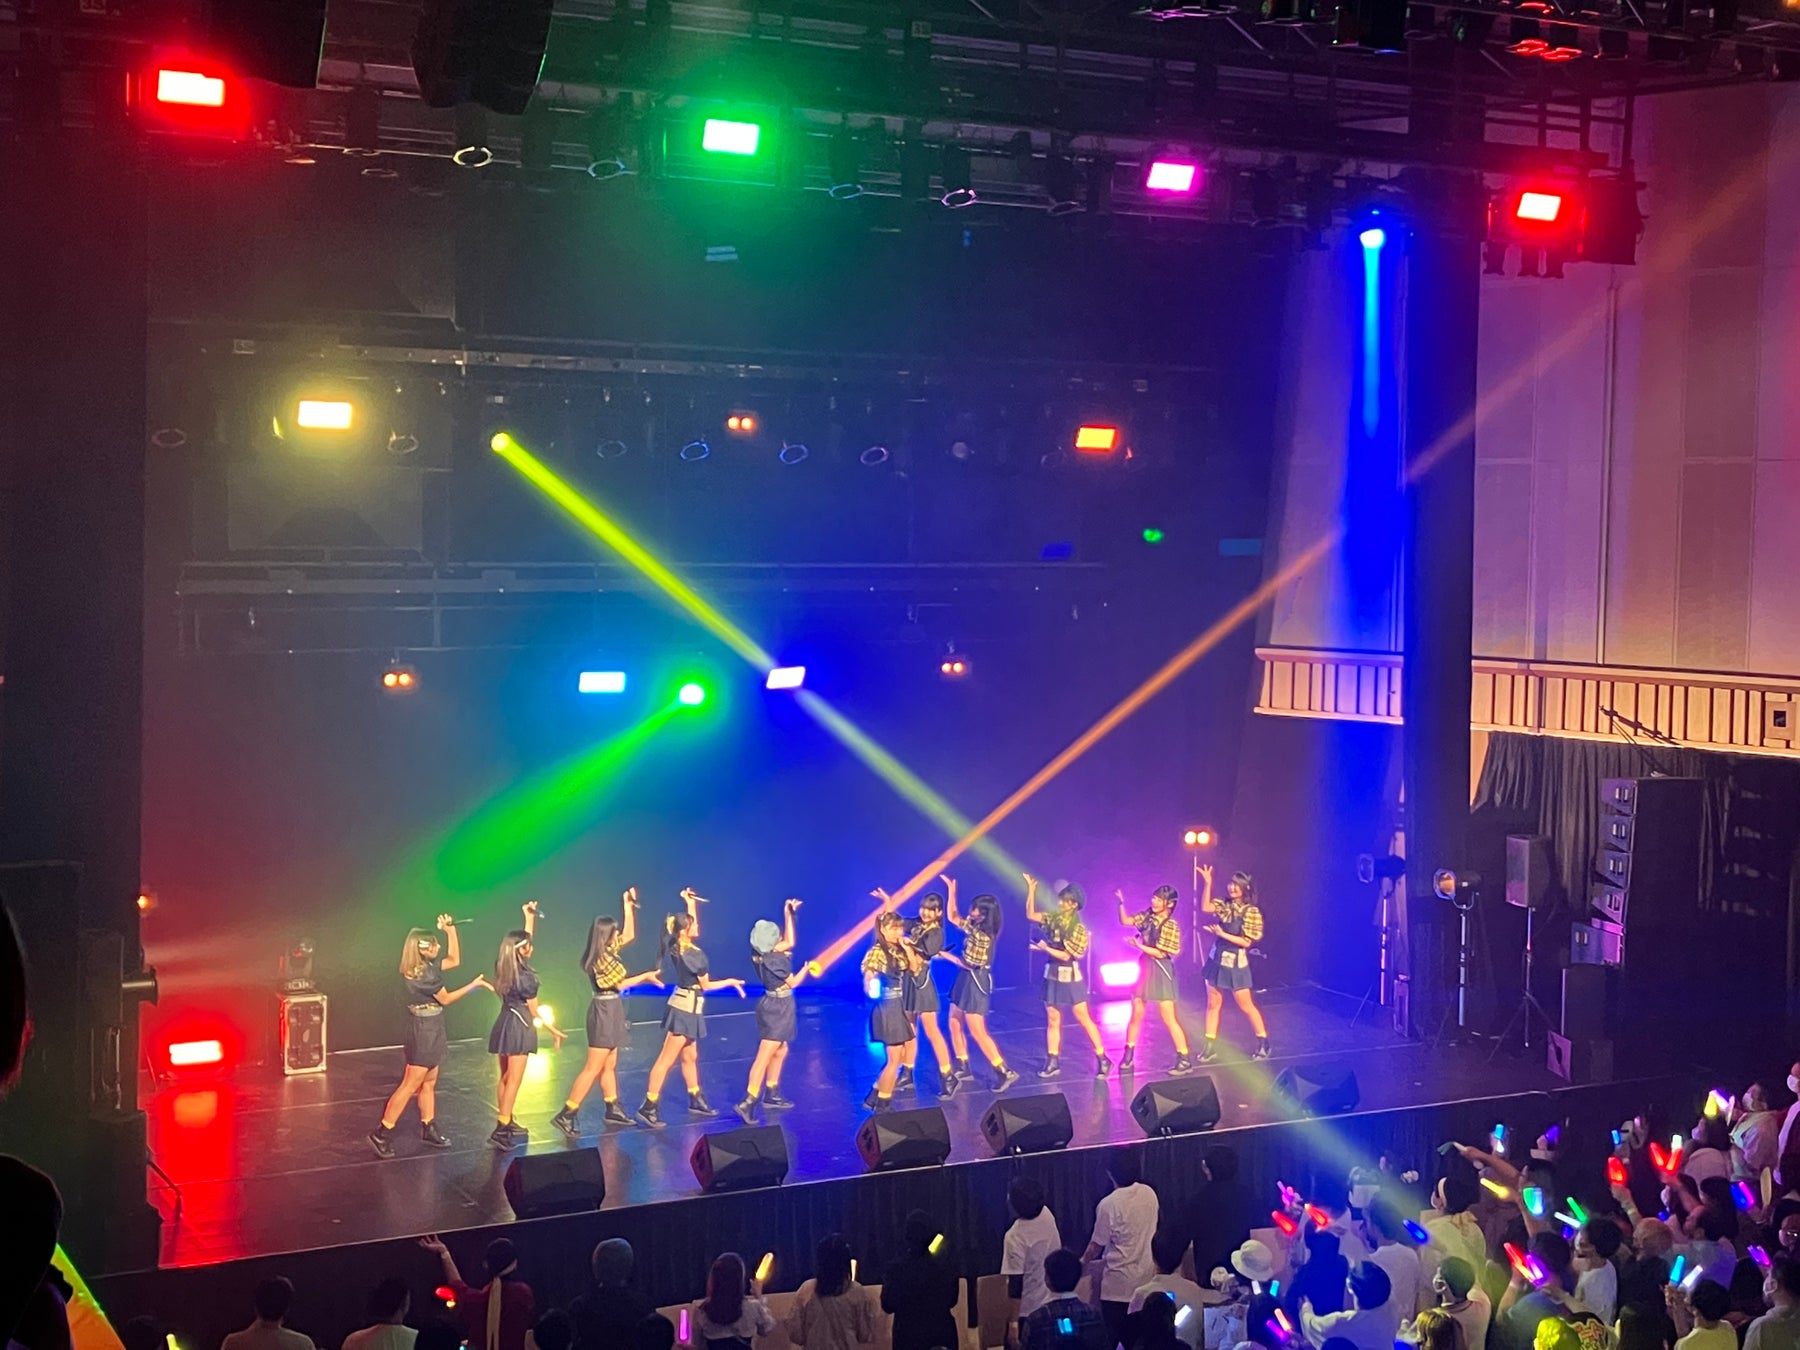 指原莉乃プロデュースによるアイドルグループ「=LOVE」「≠ME」「≒JOY」。 3グループによる「イコノイジョイ合同個別お話し会」をパシフイコ横浜で開催!!